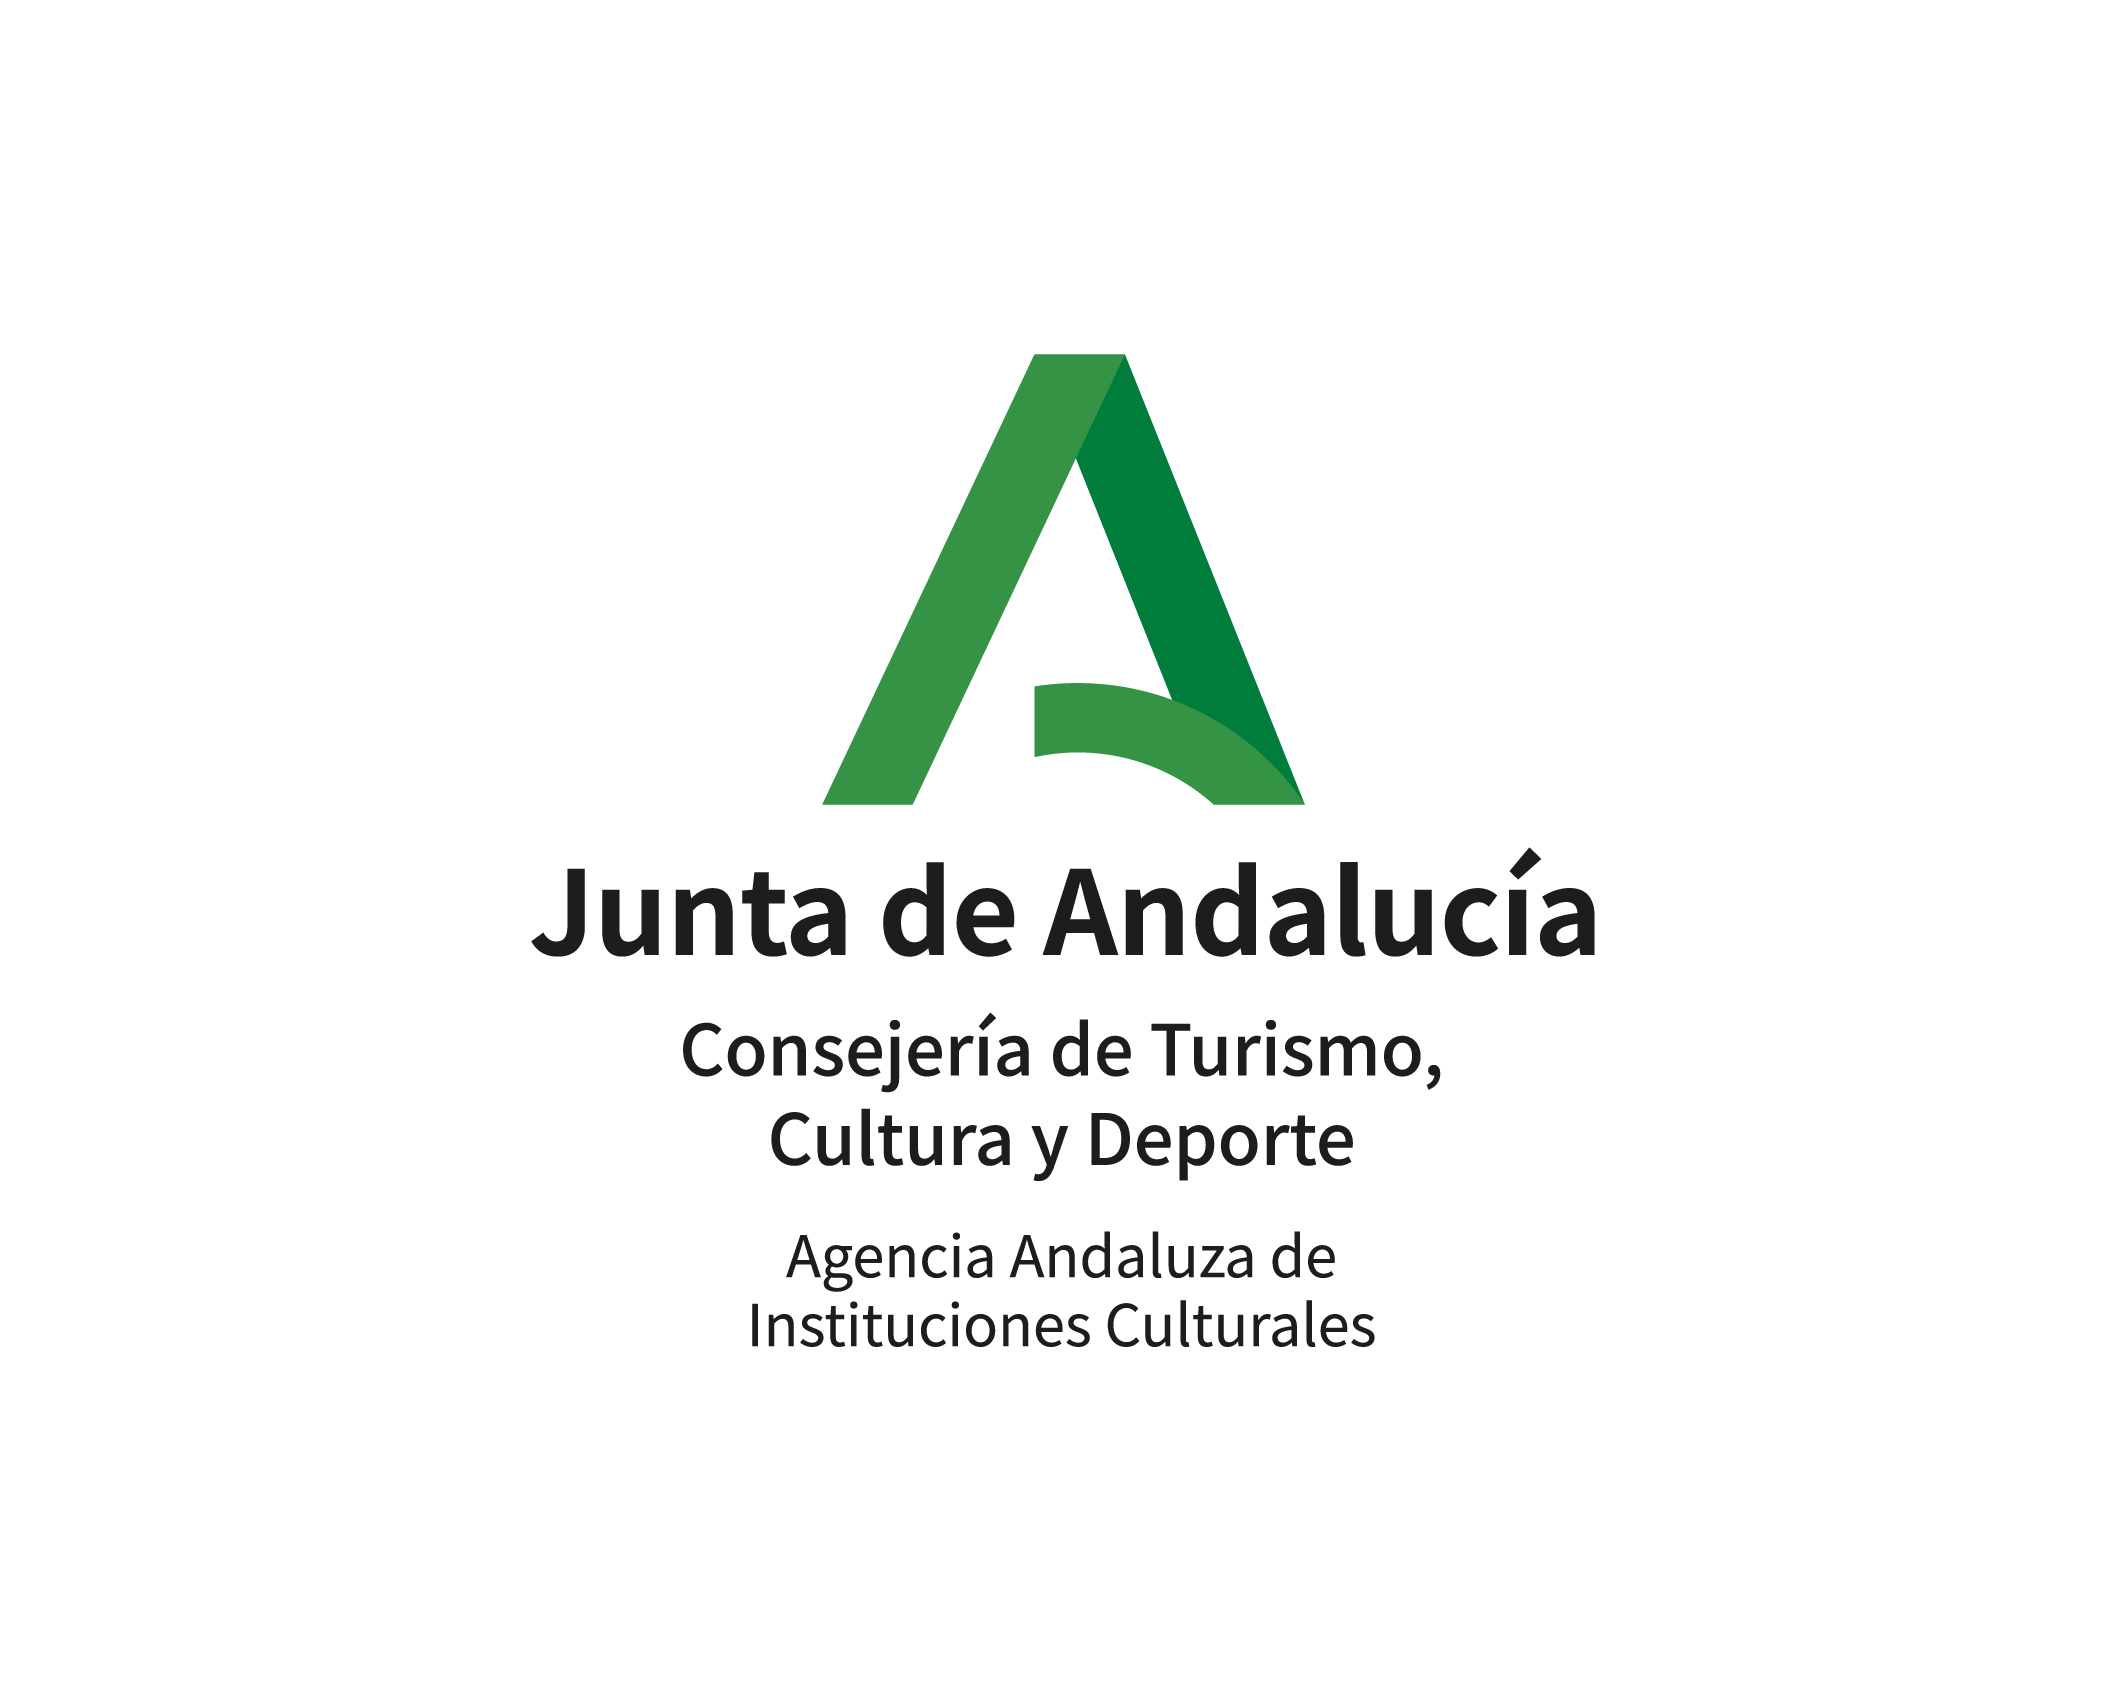 Junta de Andalucía - Consejería de Turismo, Cultura y Deporte - Agencia Andaluza de Instituciones Culturales